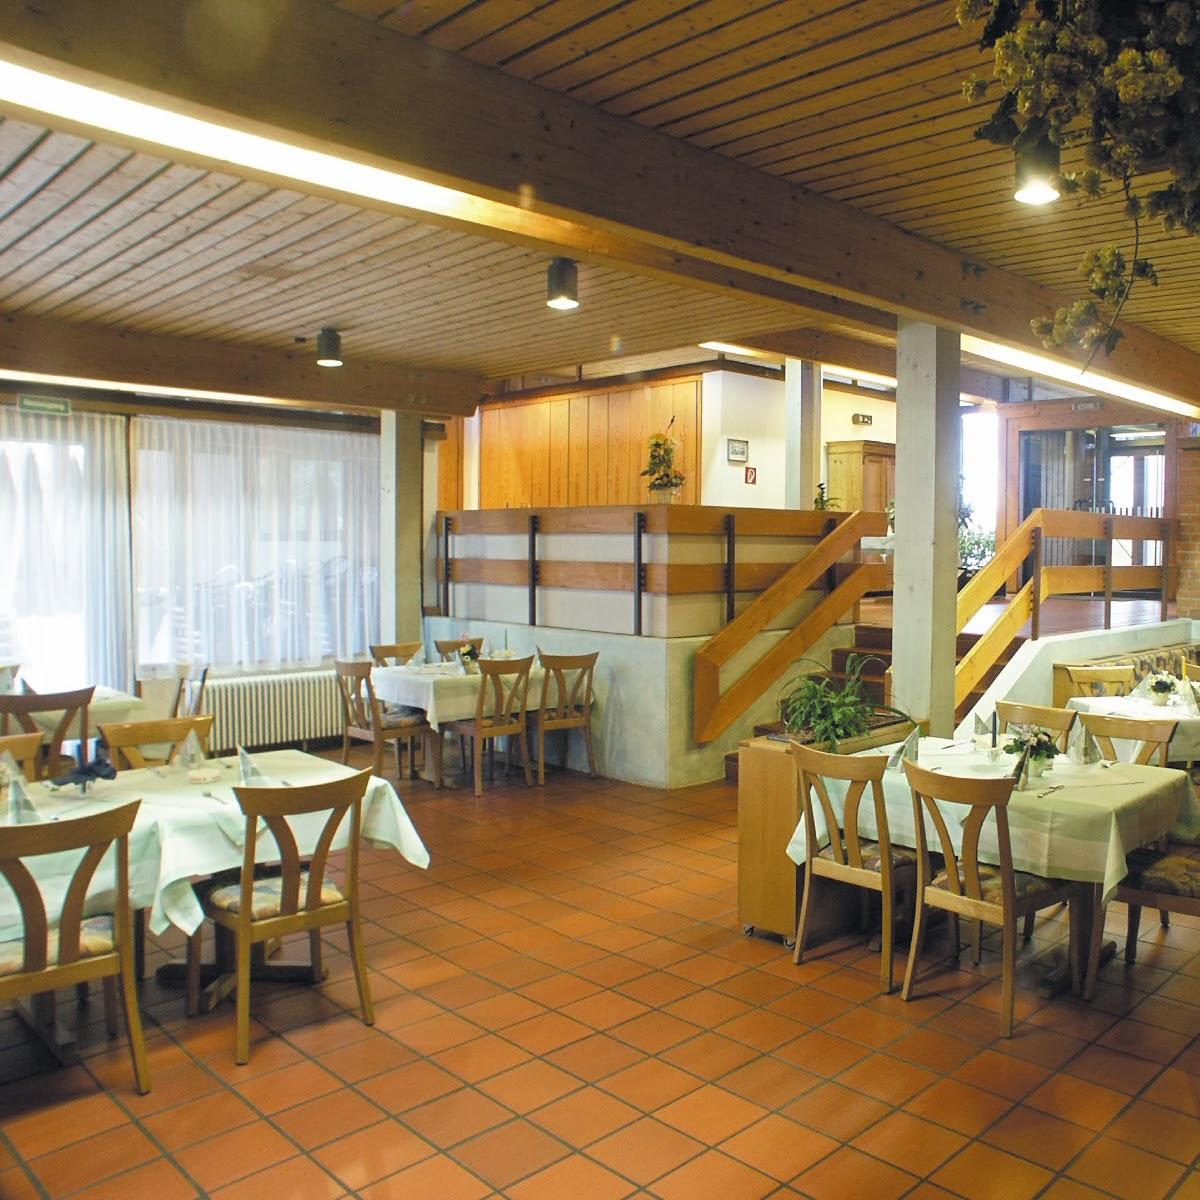 Restaurant "Park-Restaurant - Restaurant Neuhausen ob" in  Eck